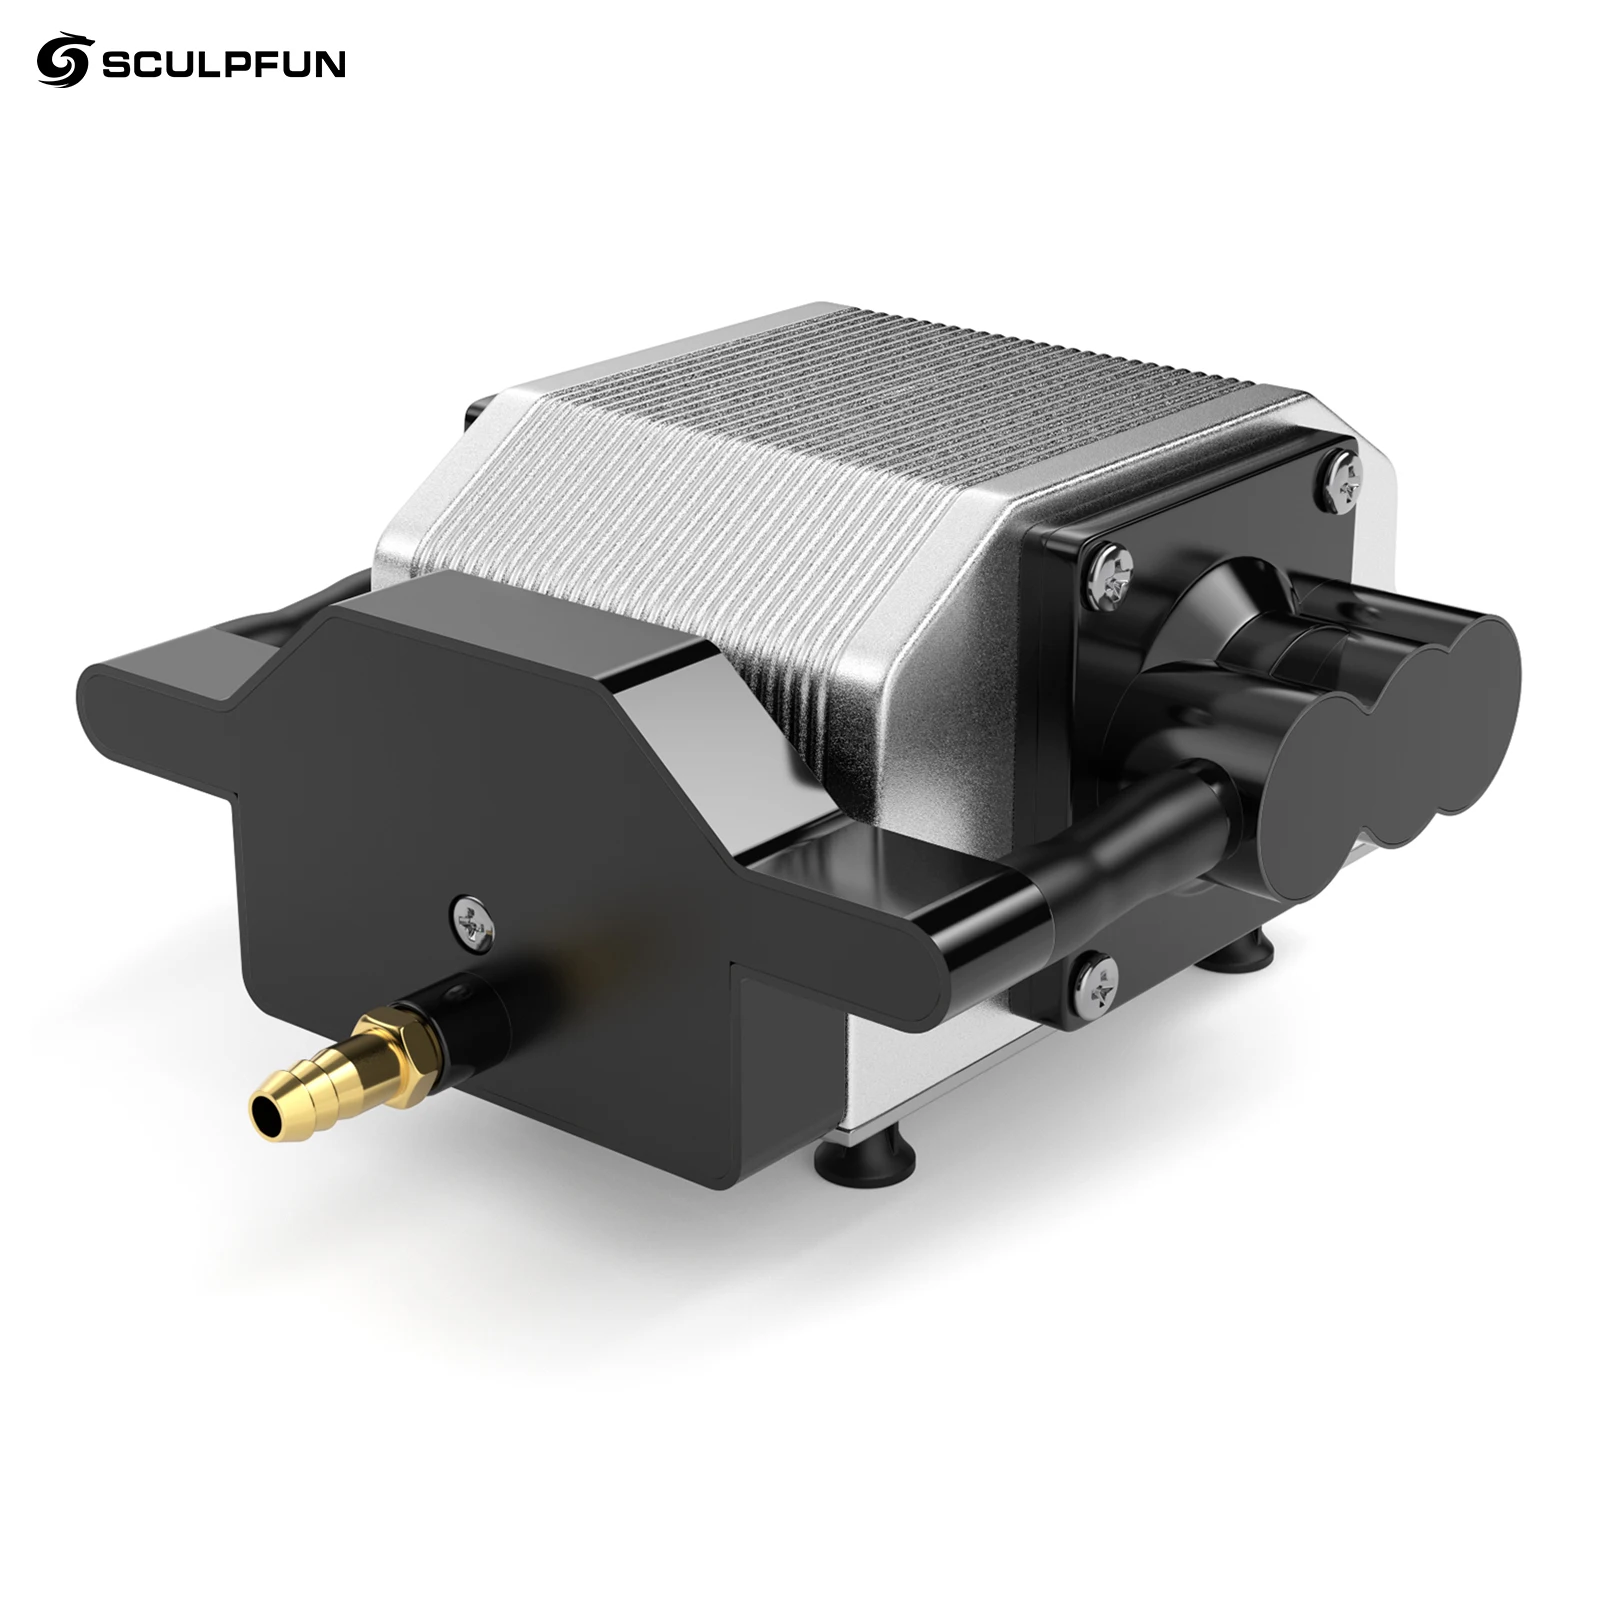 Sculfun-compresor de aire para grabador láser S10, bomba de asistencia de aire láser, velocidad ajustable, bajo ruido/vibración, salida estable, 30L/Min